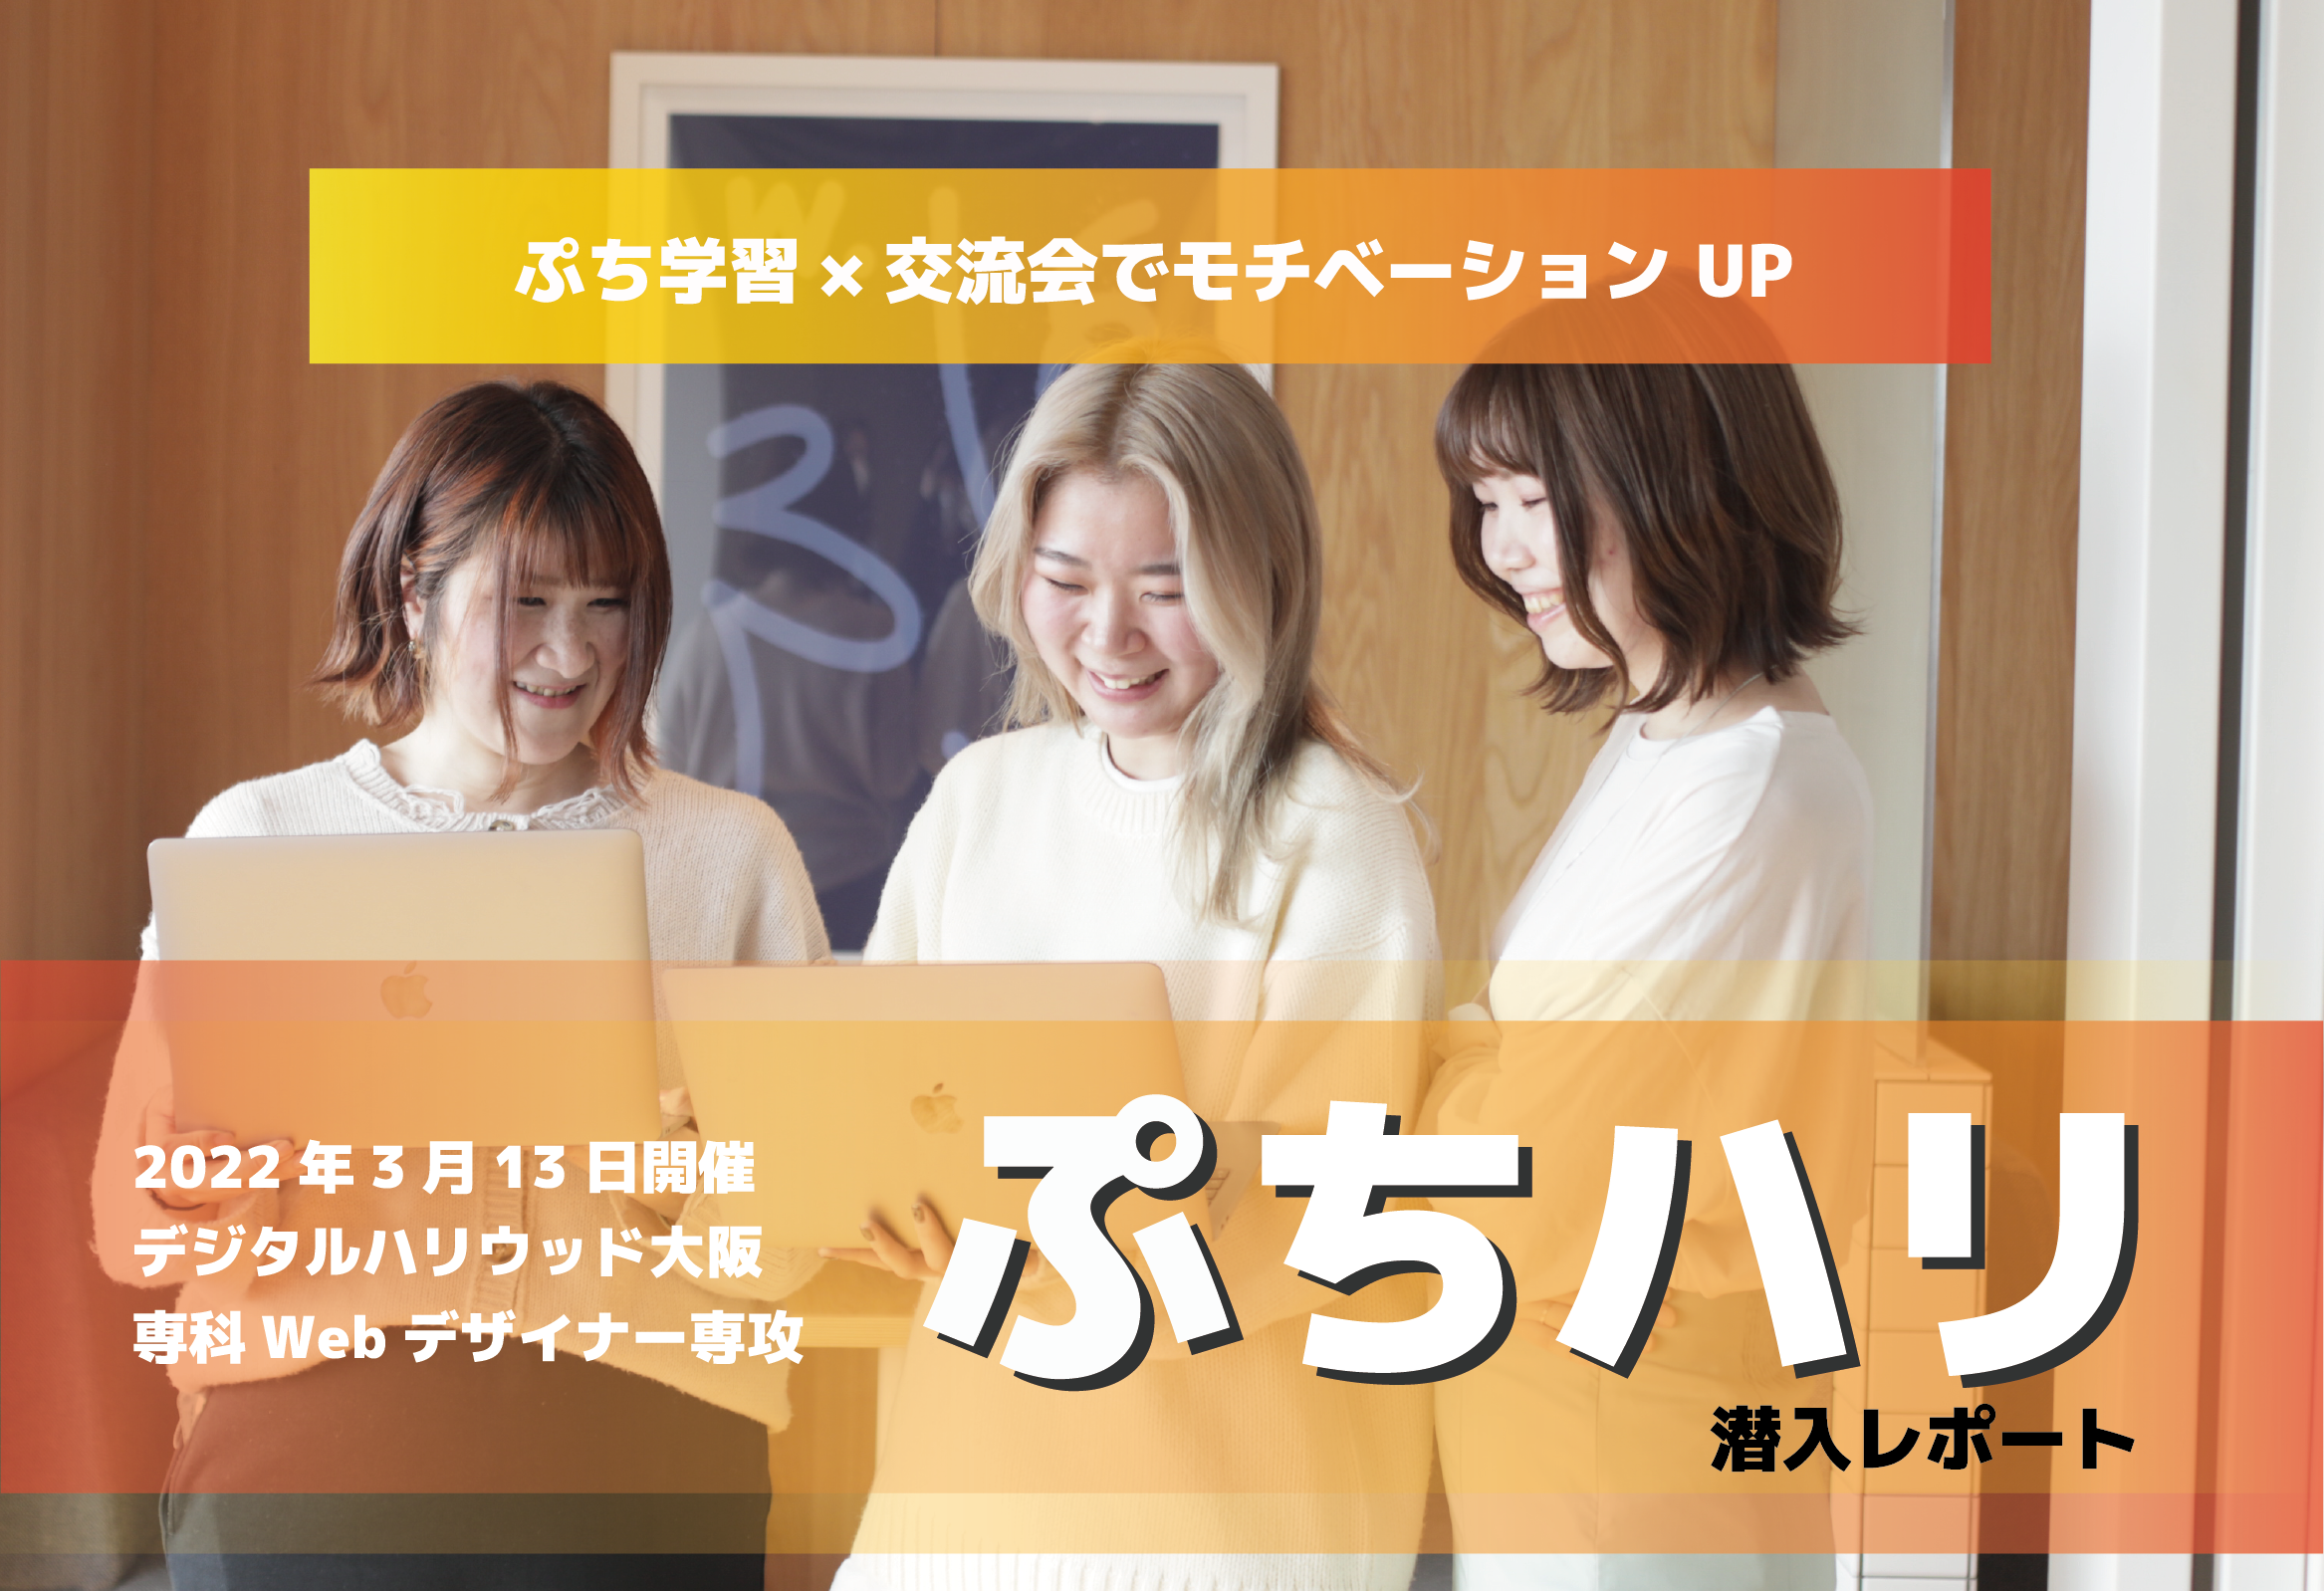 ぷち学習×交流会でモチベーション UP！ デジハリ大阪ならではの「ぷちハリ」イベントに潜入してみました！